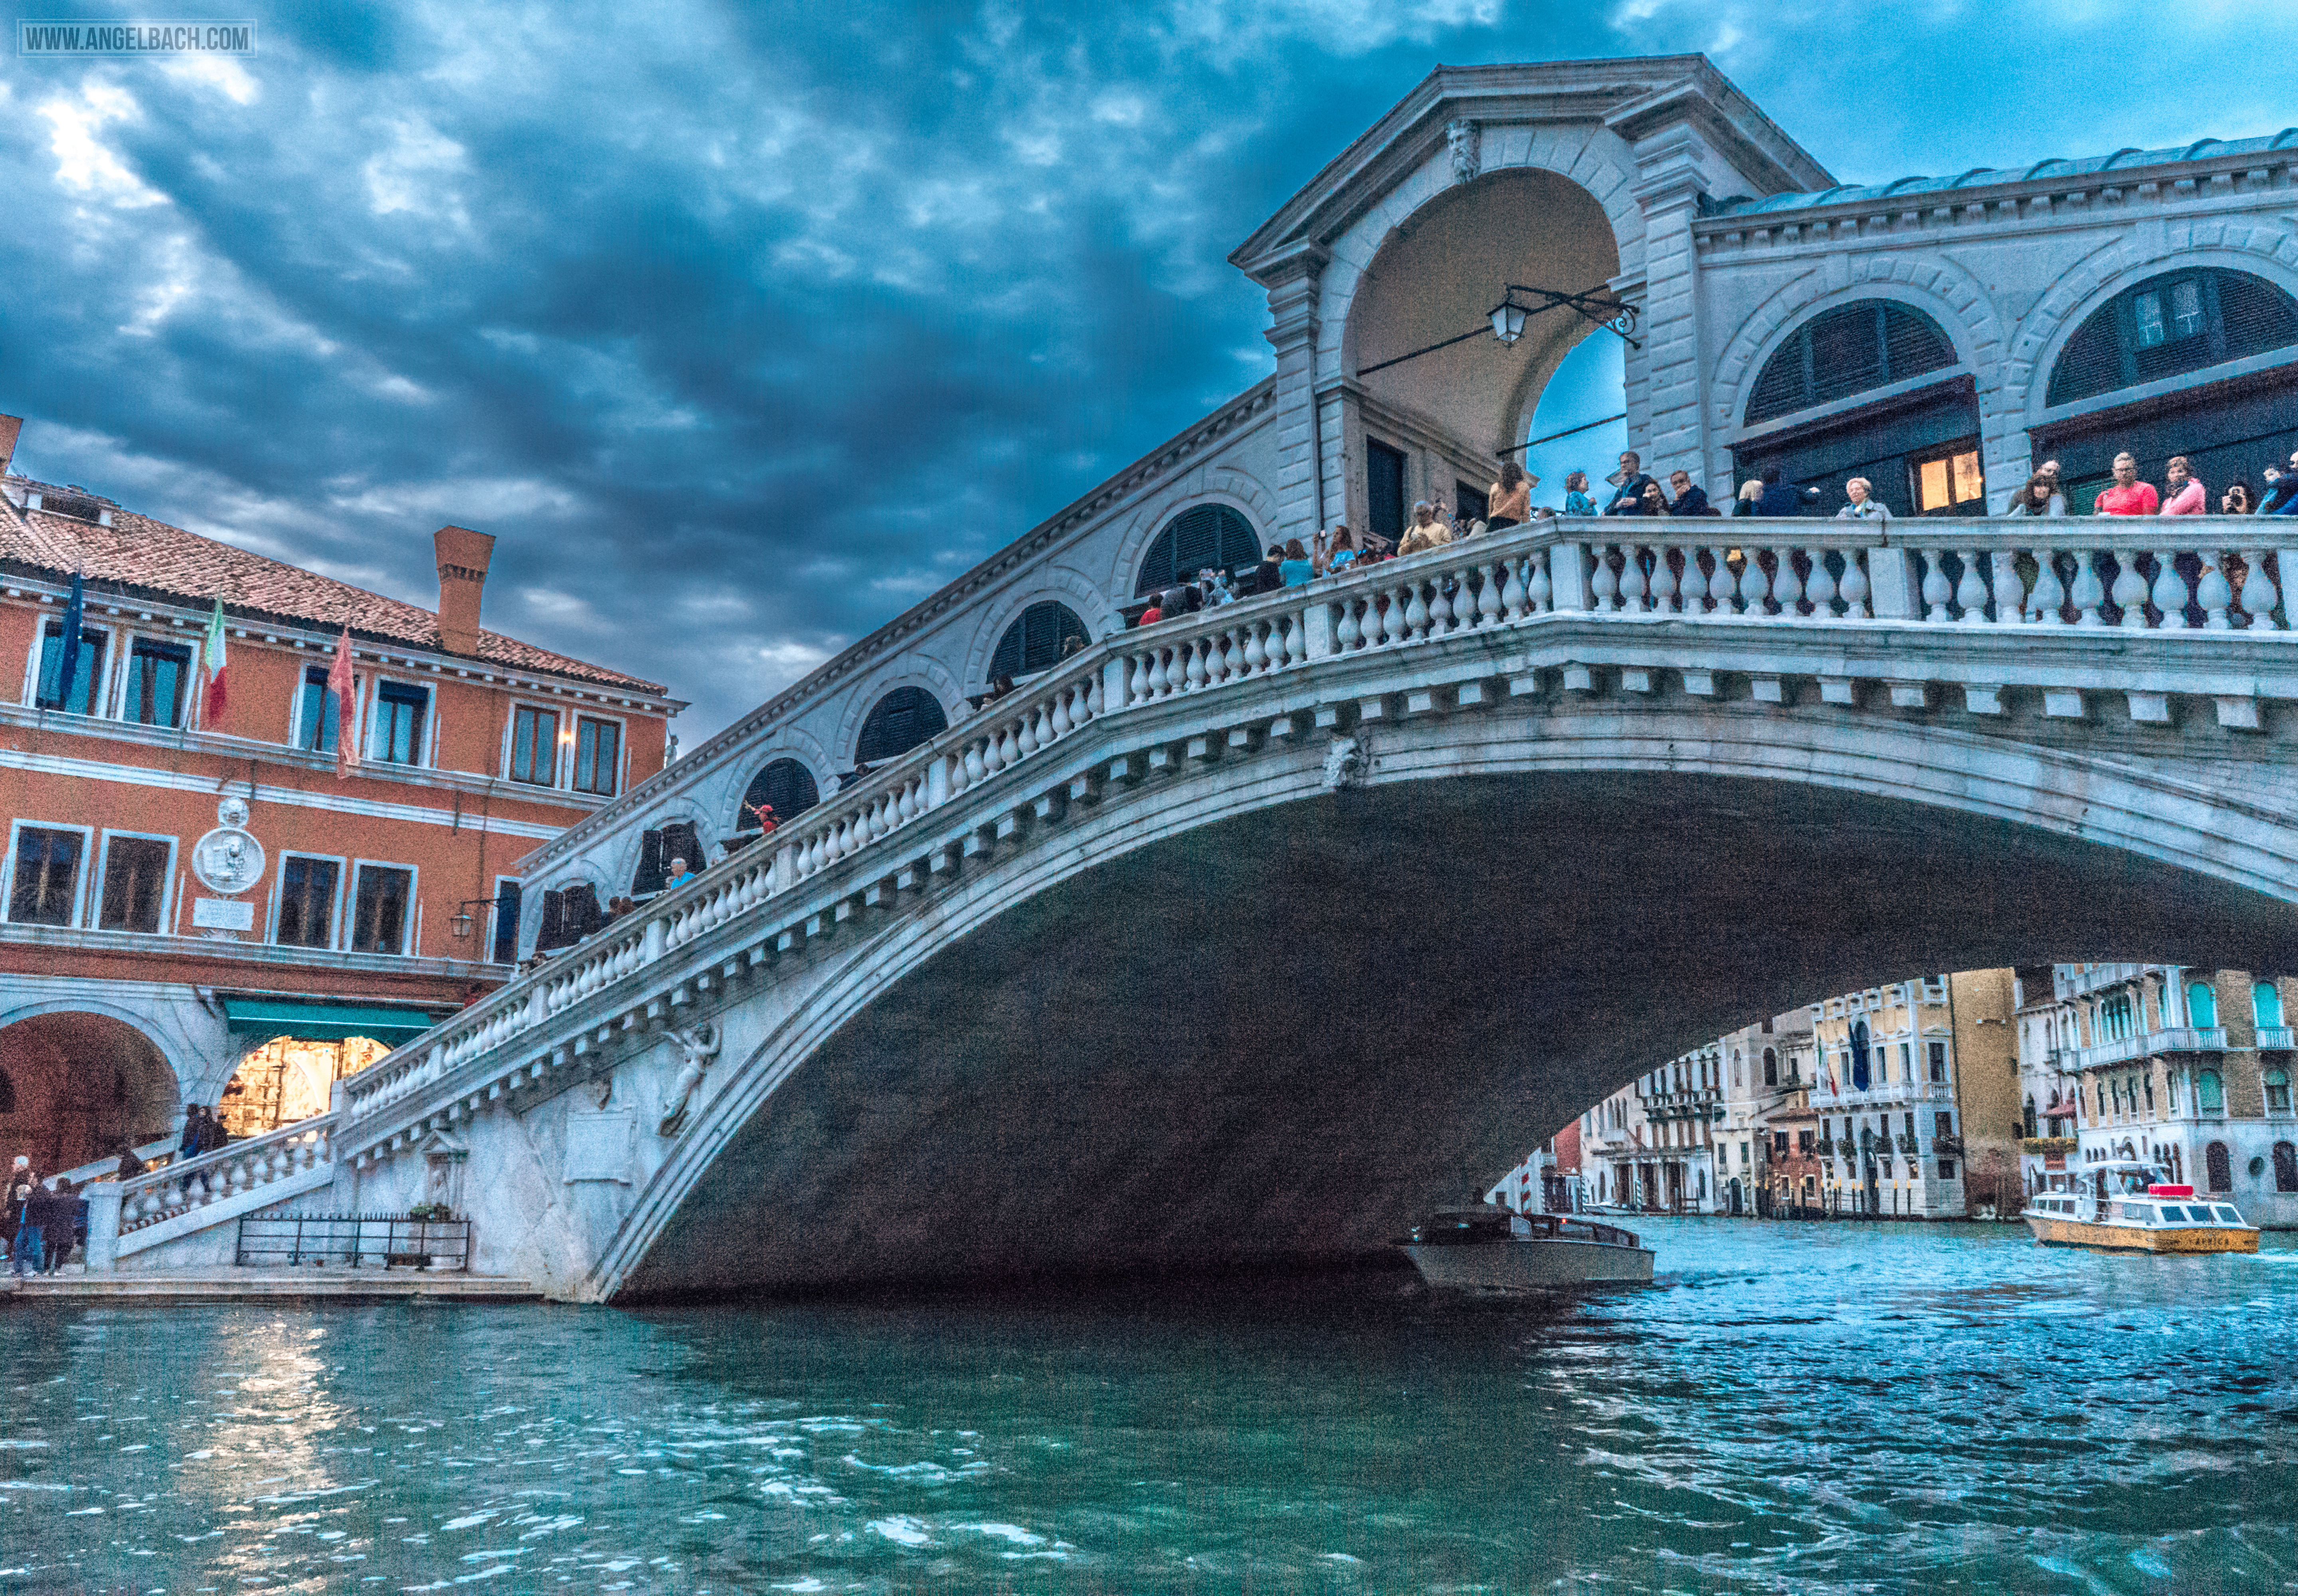 Venice Architecture, Grand Canal, Sailing, boats, gandola ride, Adriatic Sea, Venice Lagoon, Renaissance, Gothic, Vintage Venice, Venezia, Italy, Venice Realto Bridge